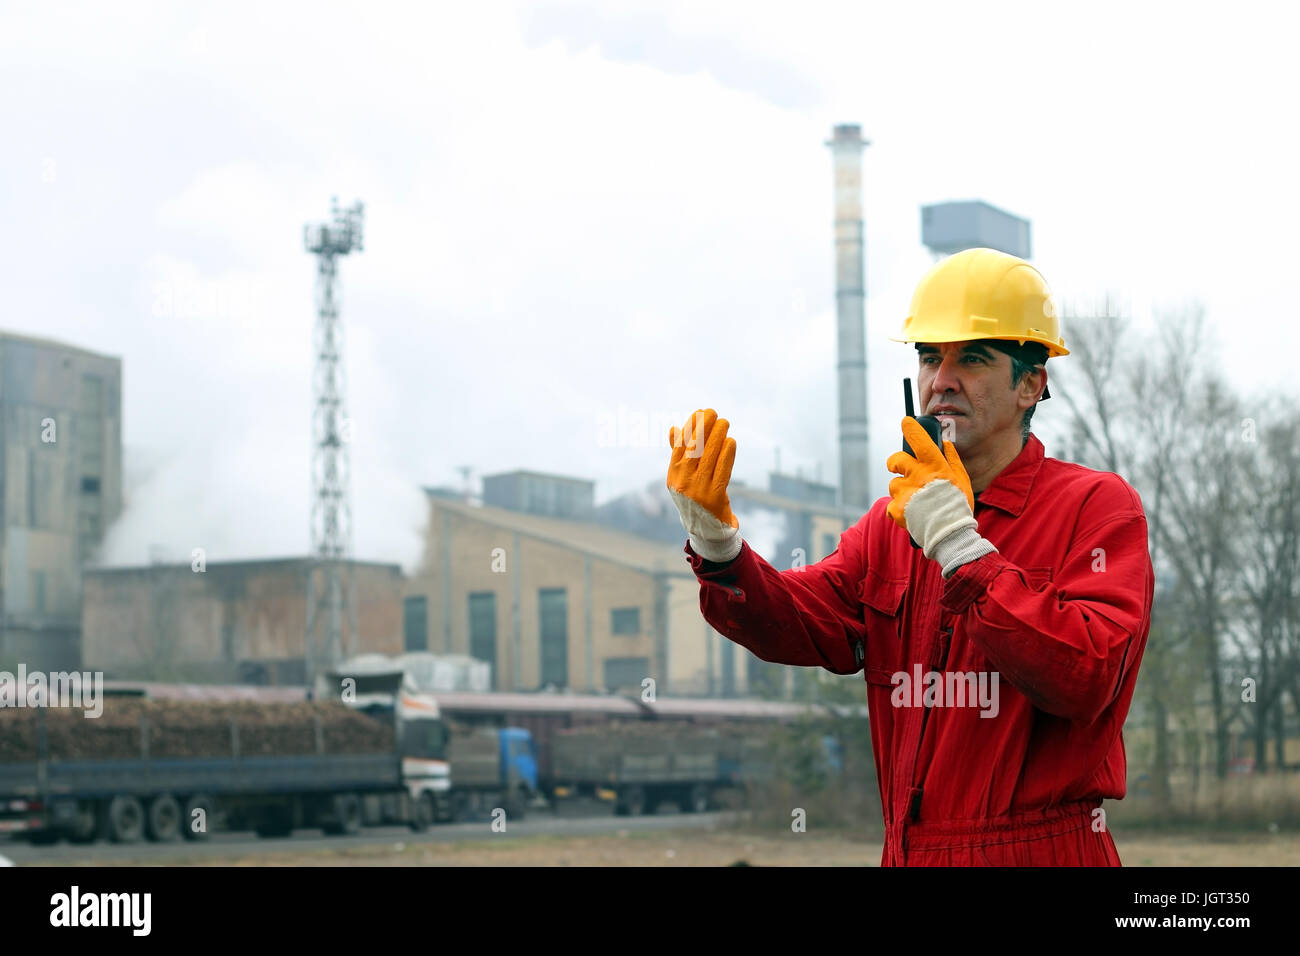 Portrait of a worker using walkie-talkie in sugar refinery. Stock Photo